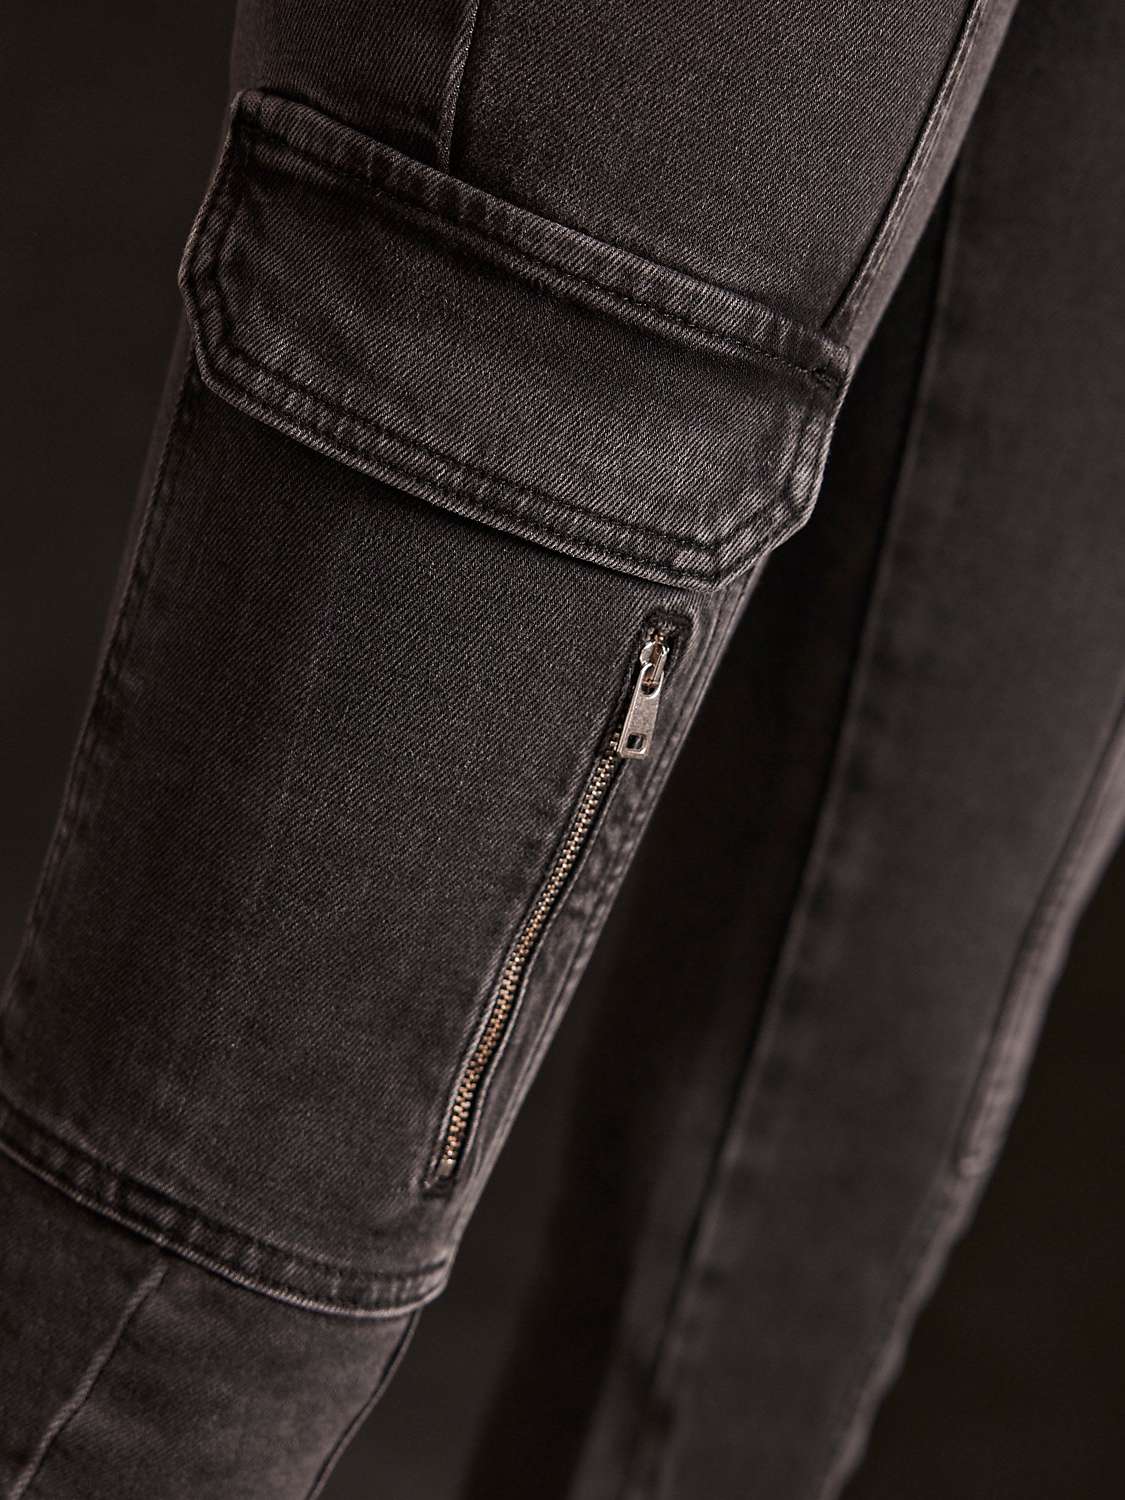 Buy Mint Velvet Slim Fit Jeans, Black Online at johnlewis.com